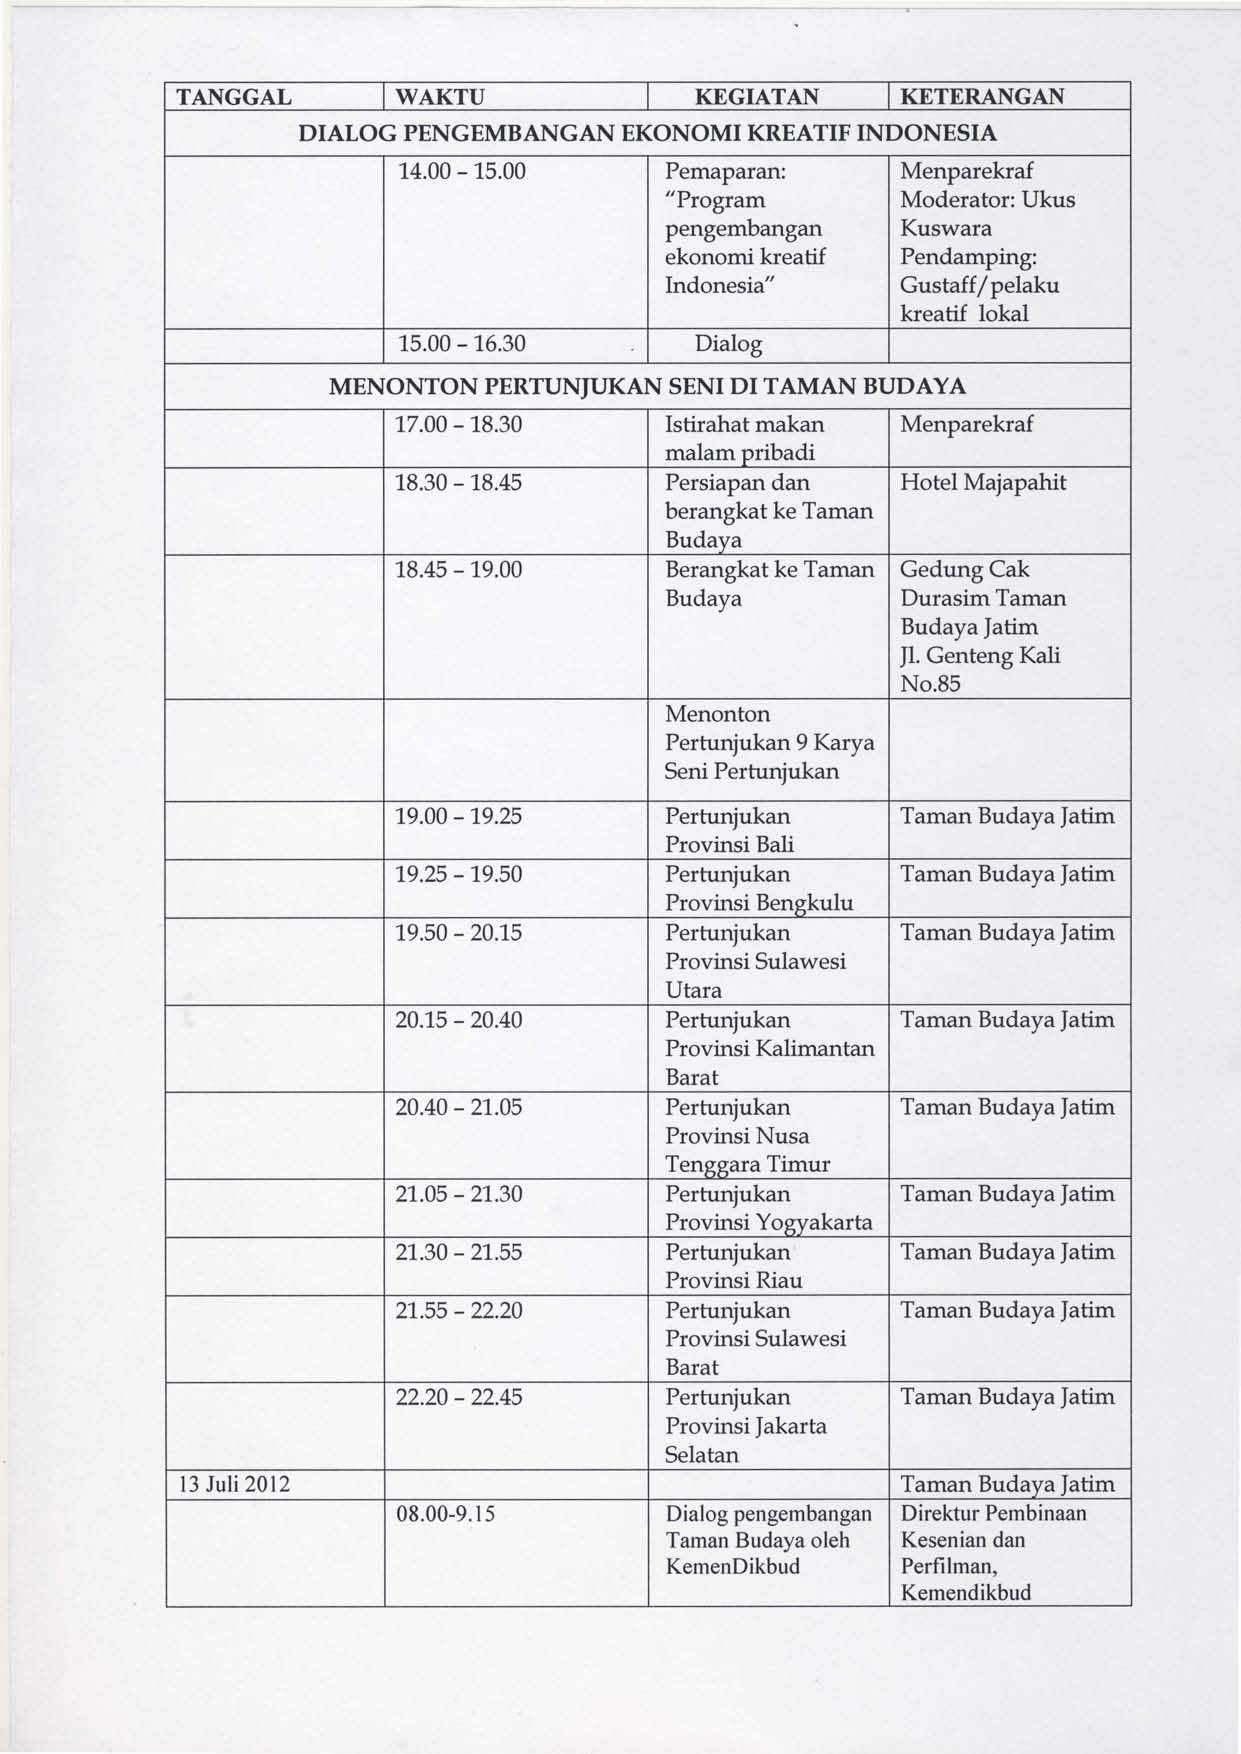 TANGGAL WAKTU KEGIATAN KETERANGAN DIALOG PENGEMBANGAN EKONOMI KREATIF INDONESIA 14.00-15.00 Pemaparan: "Program pengembangan ekonomi kreatif Indonesia" 15.00-16.